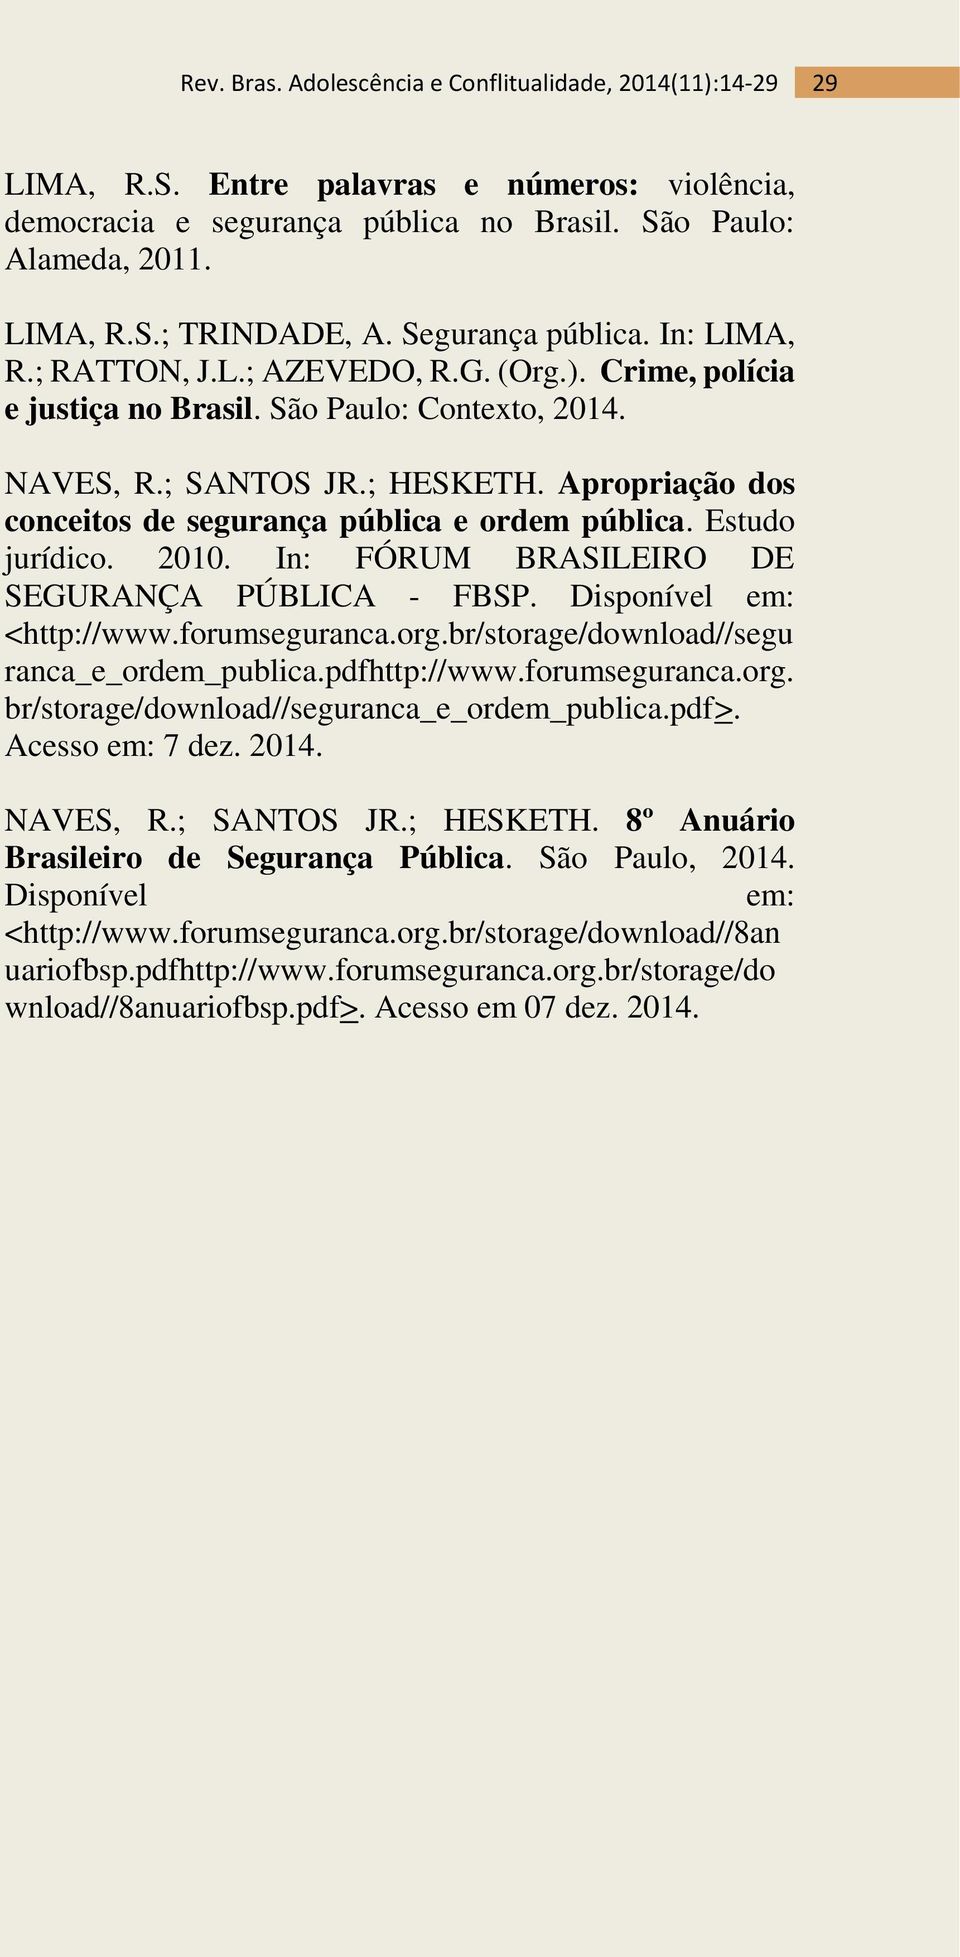 In: FÓRUM BRASILEIRO DE SEGURANÇA PÚBLICA - FBSP. Disponível em: <http://www.forumseguranca.org.br/storage/download//segu ranca_e_ordem_publica.pdfhttp://www.forumseguranca.org. br/storage/download//seguranca_e_ordem_publica.